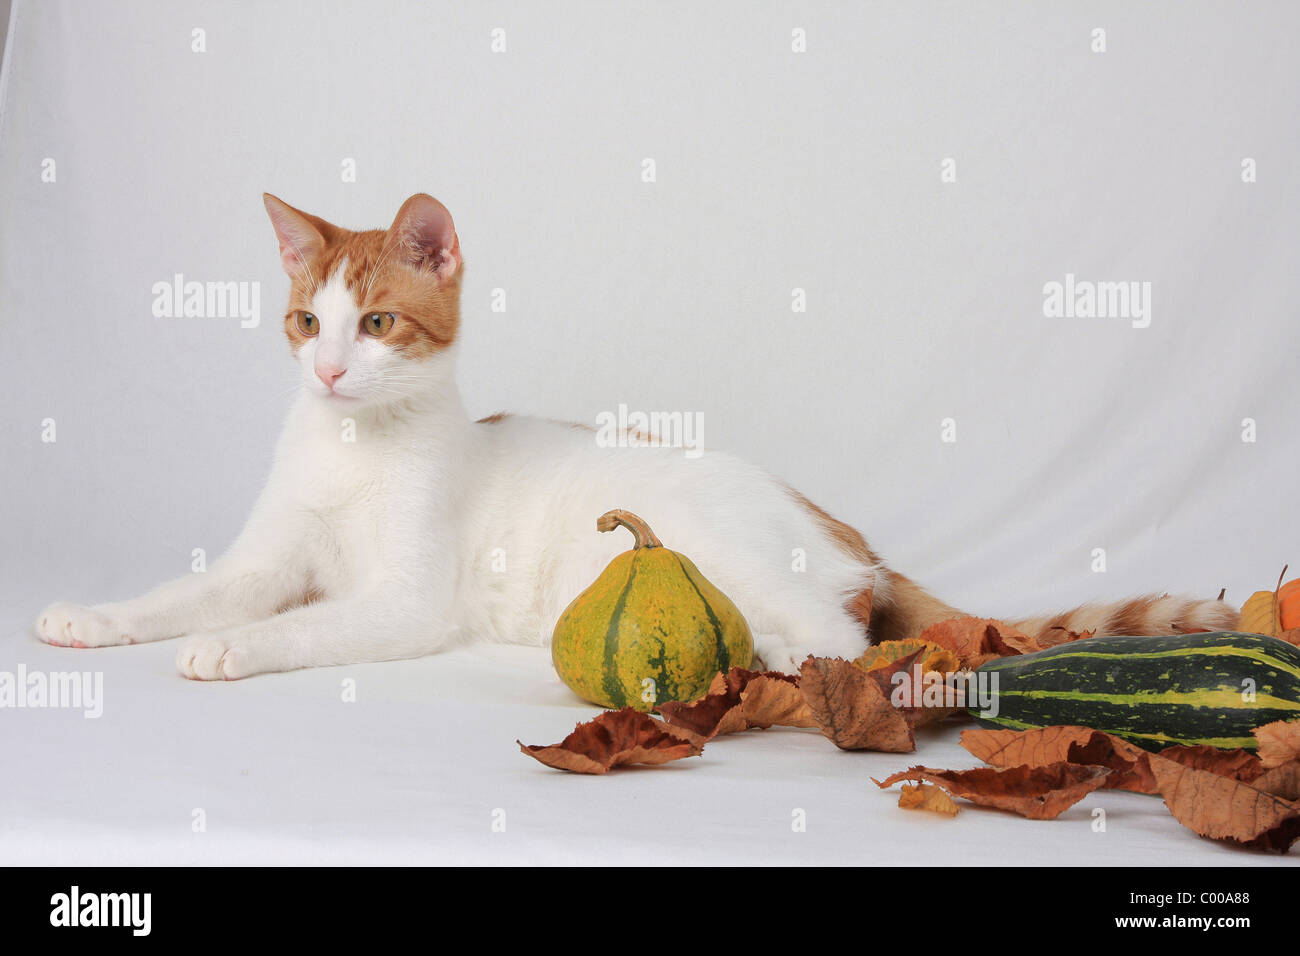 Hauskatze, herbstliche Dekoration, Felis silvestris forma catus, Domestic-cat, autumn decoration Stock Photo